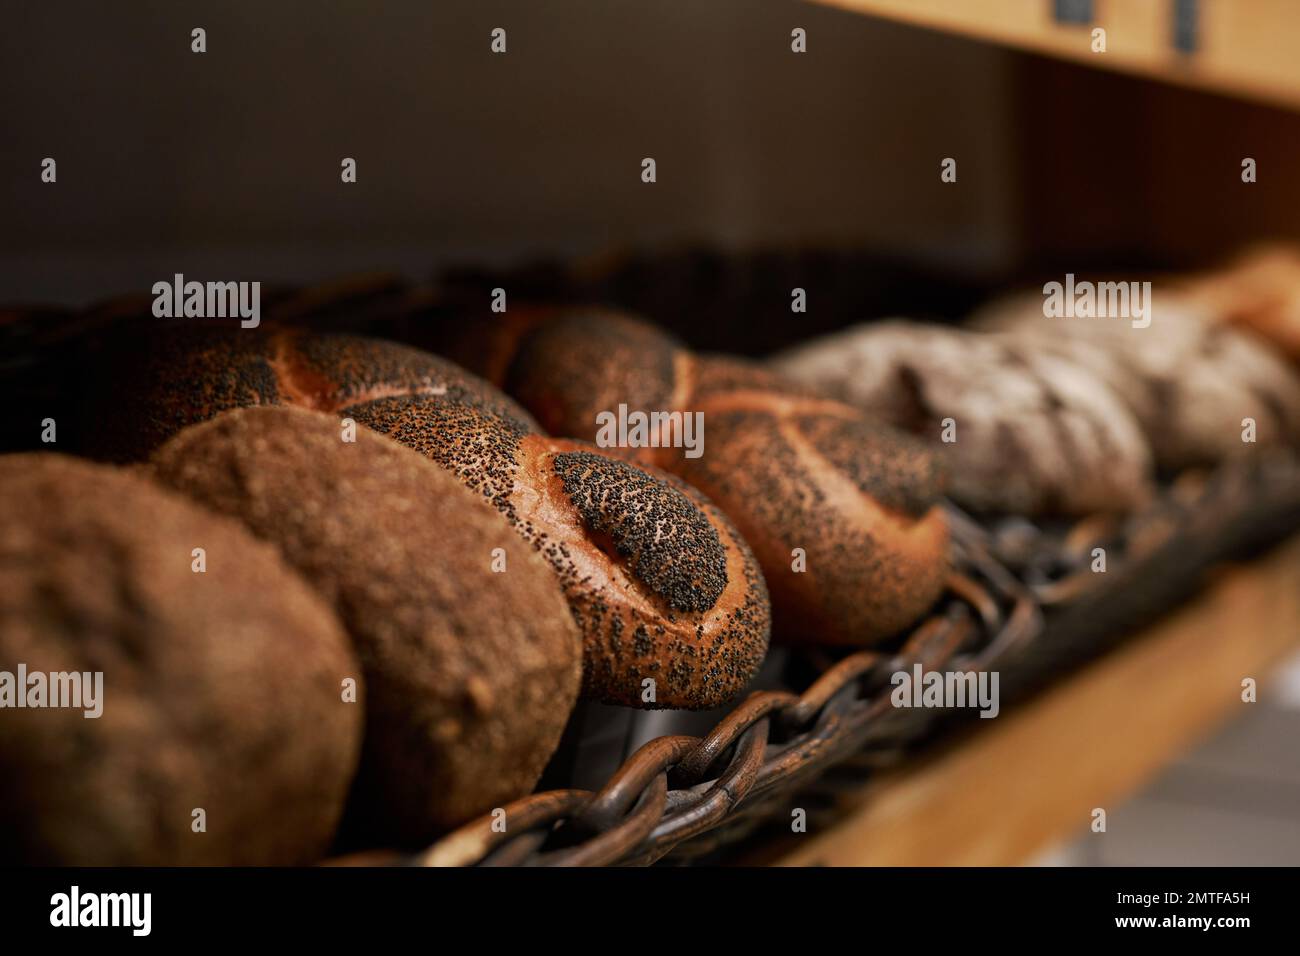 Various types of freshly baked bread on shelves in bakery Stock Photo